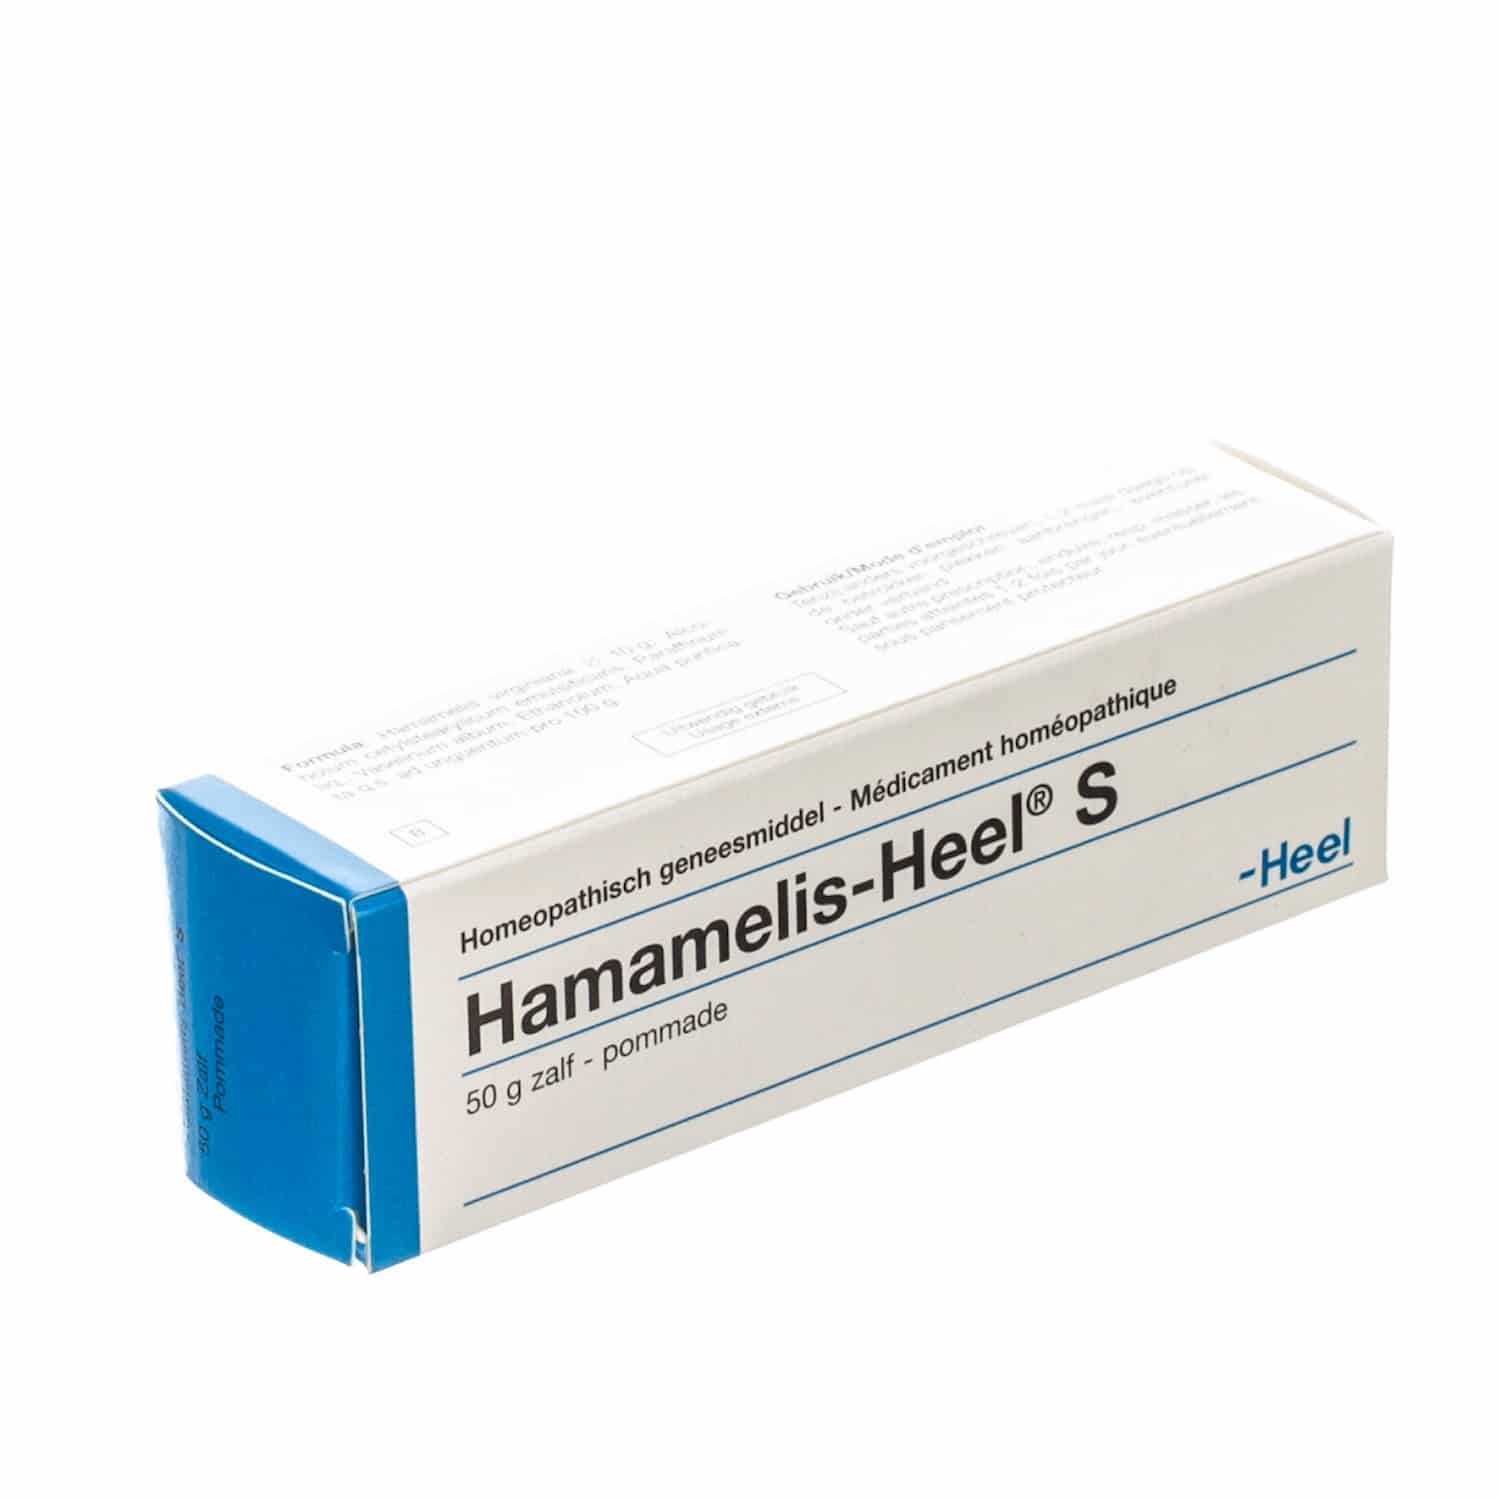 Heel Hamamelis